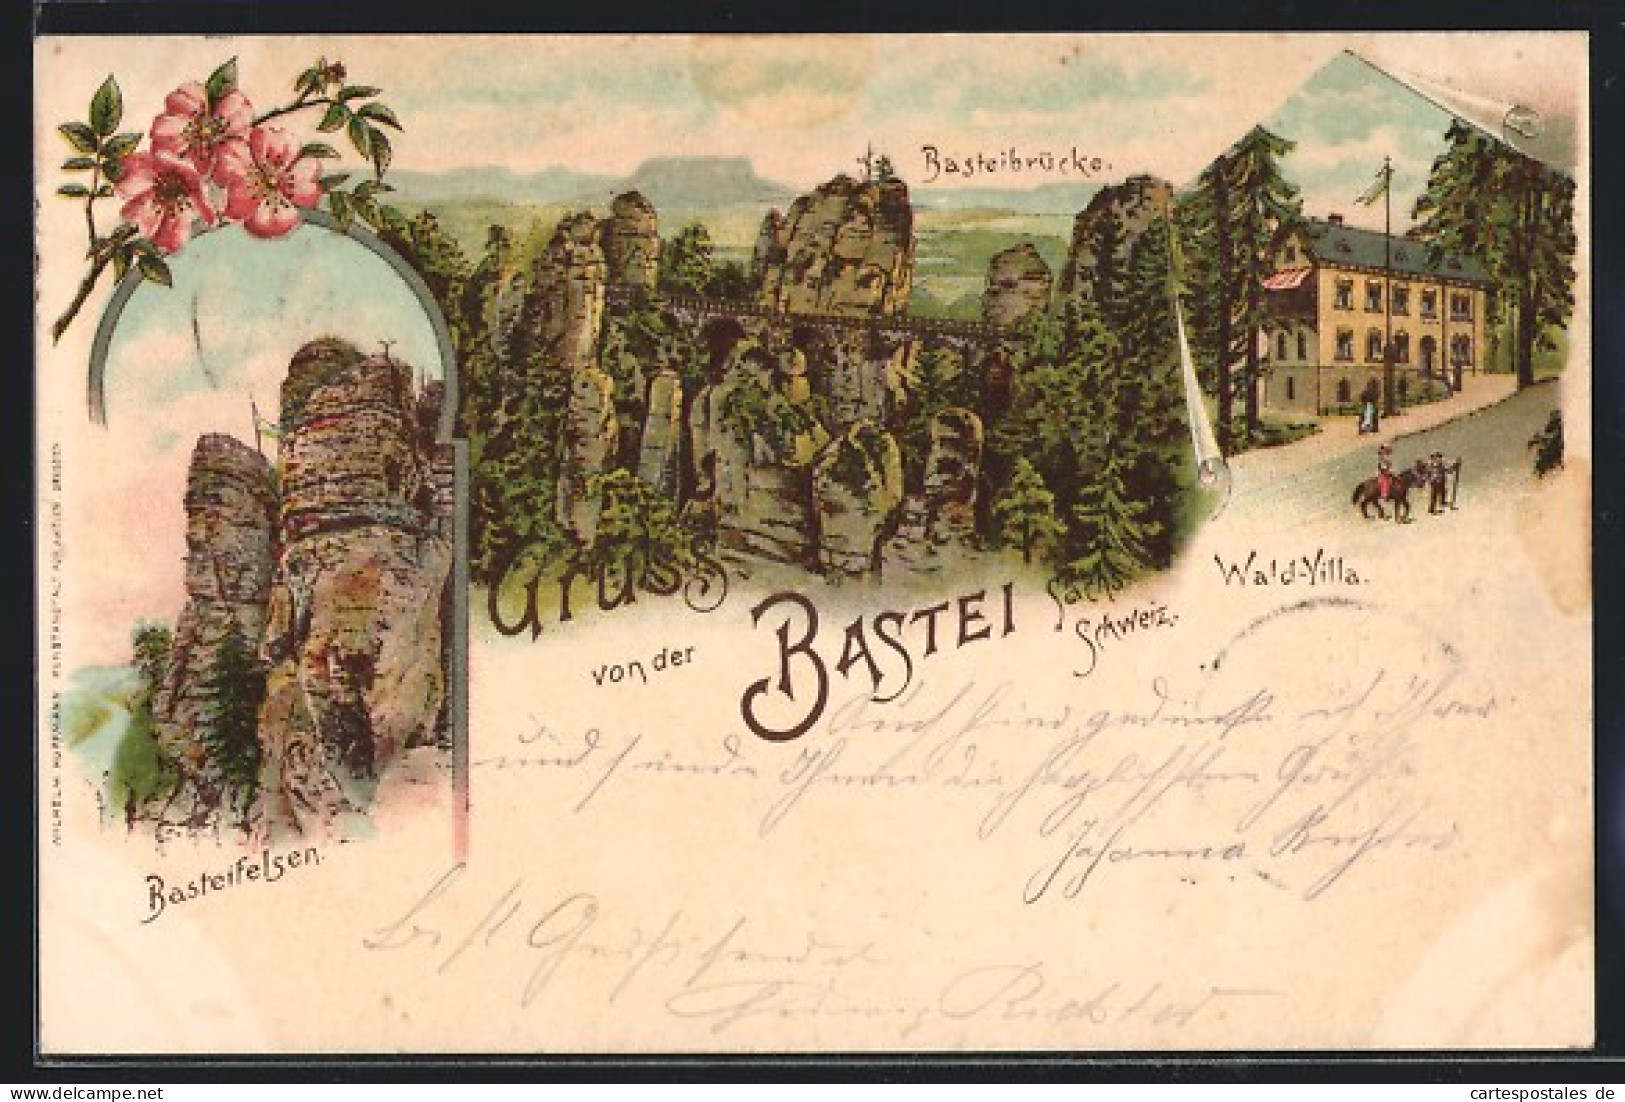 Lithographie Bastei, Gasthaus Wald-Villa, Basteibrücke  - Bastei (sächs. Schweiz)